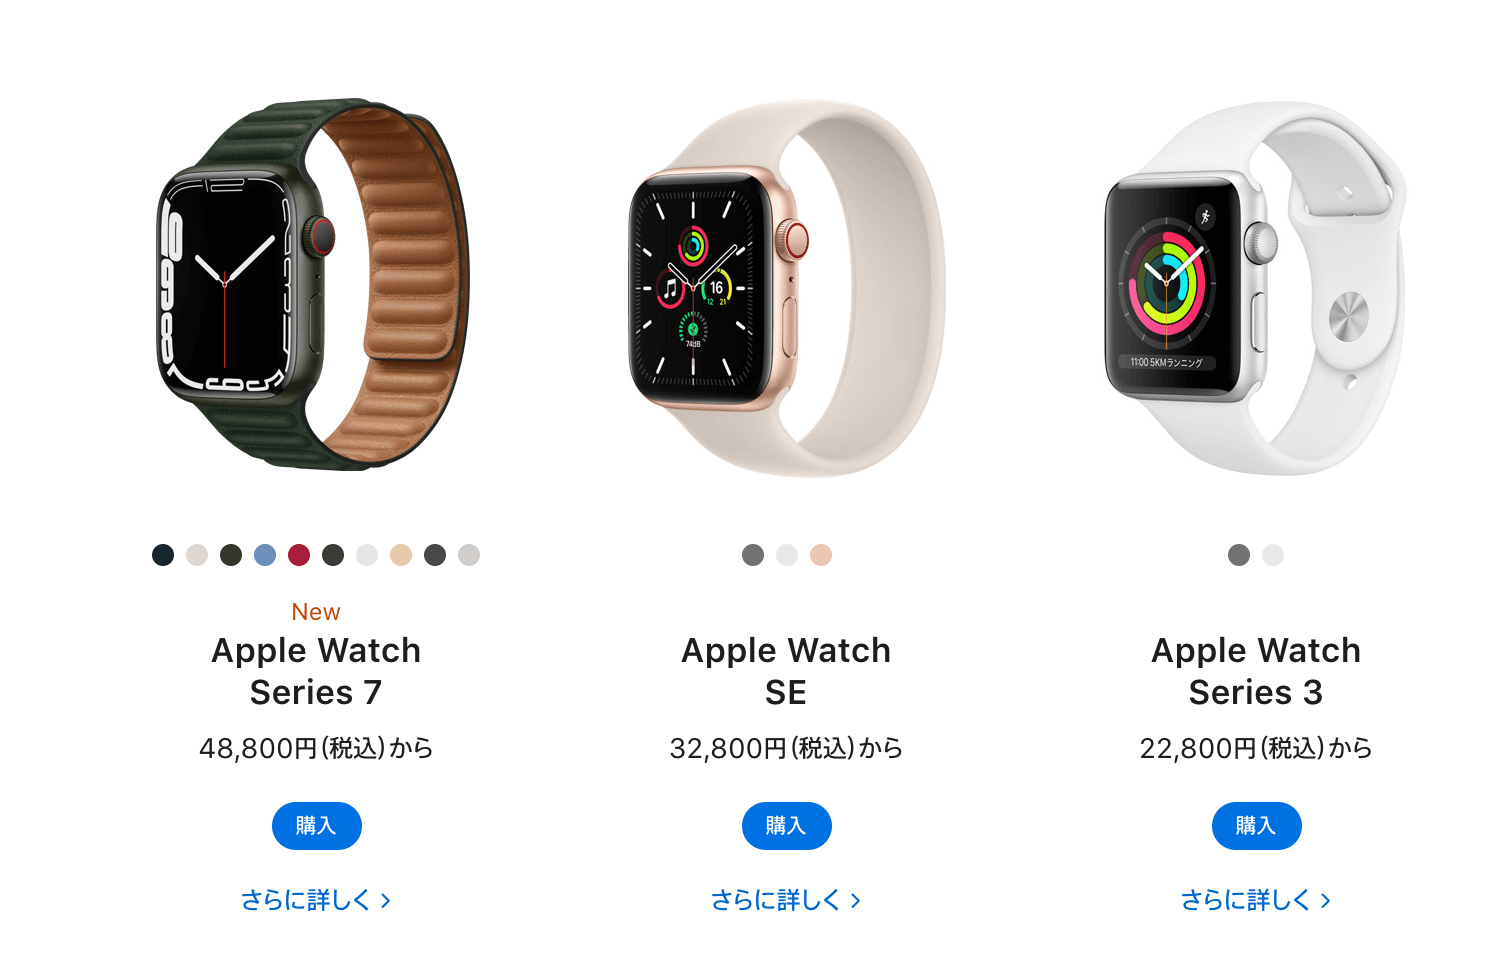 AppleWatchシリーズ比較【Series3と7、SEどれを買うか】 | ぶちくまどっとこむ